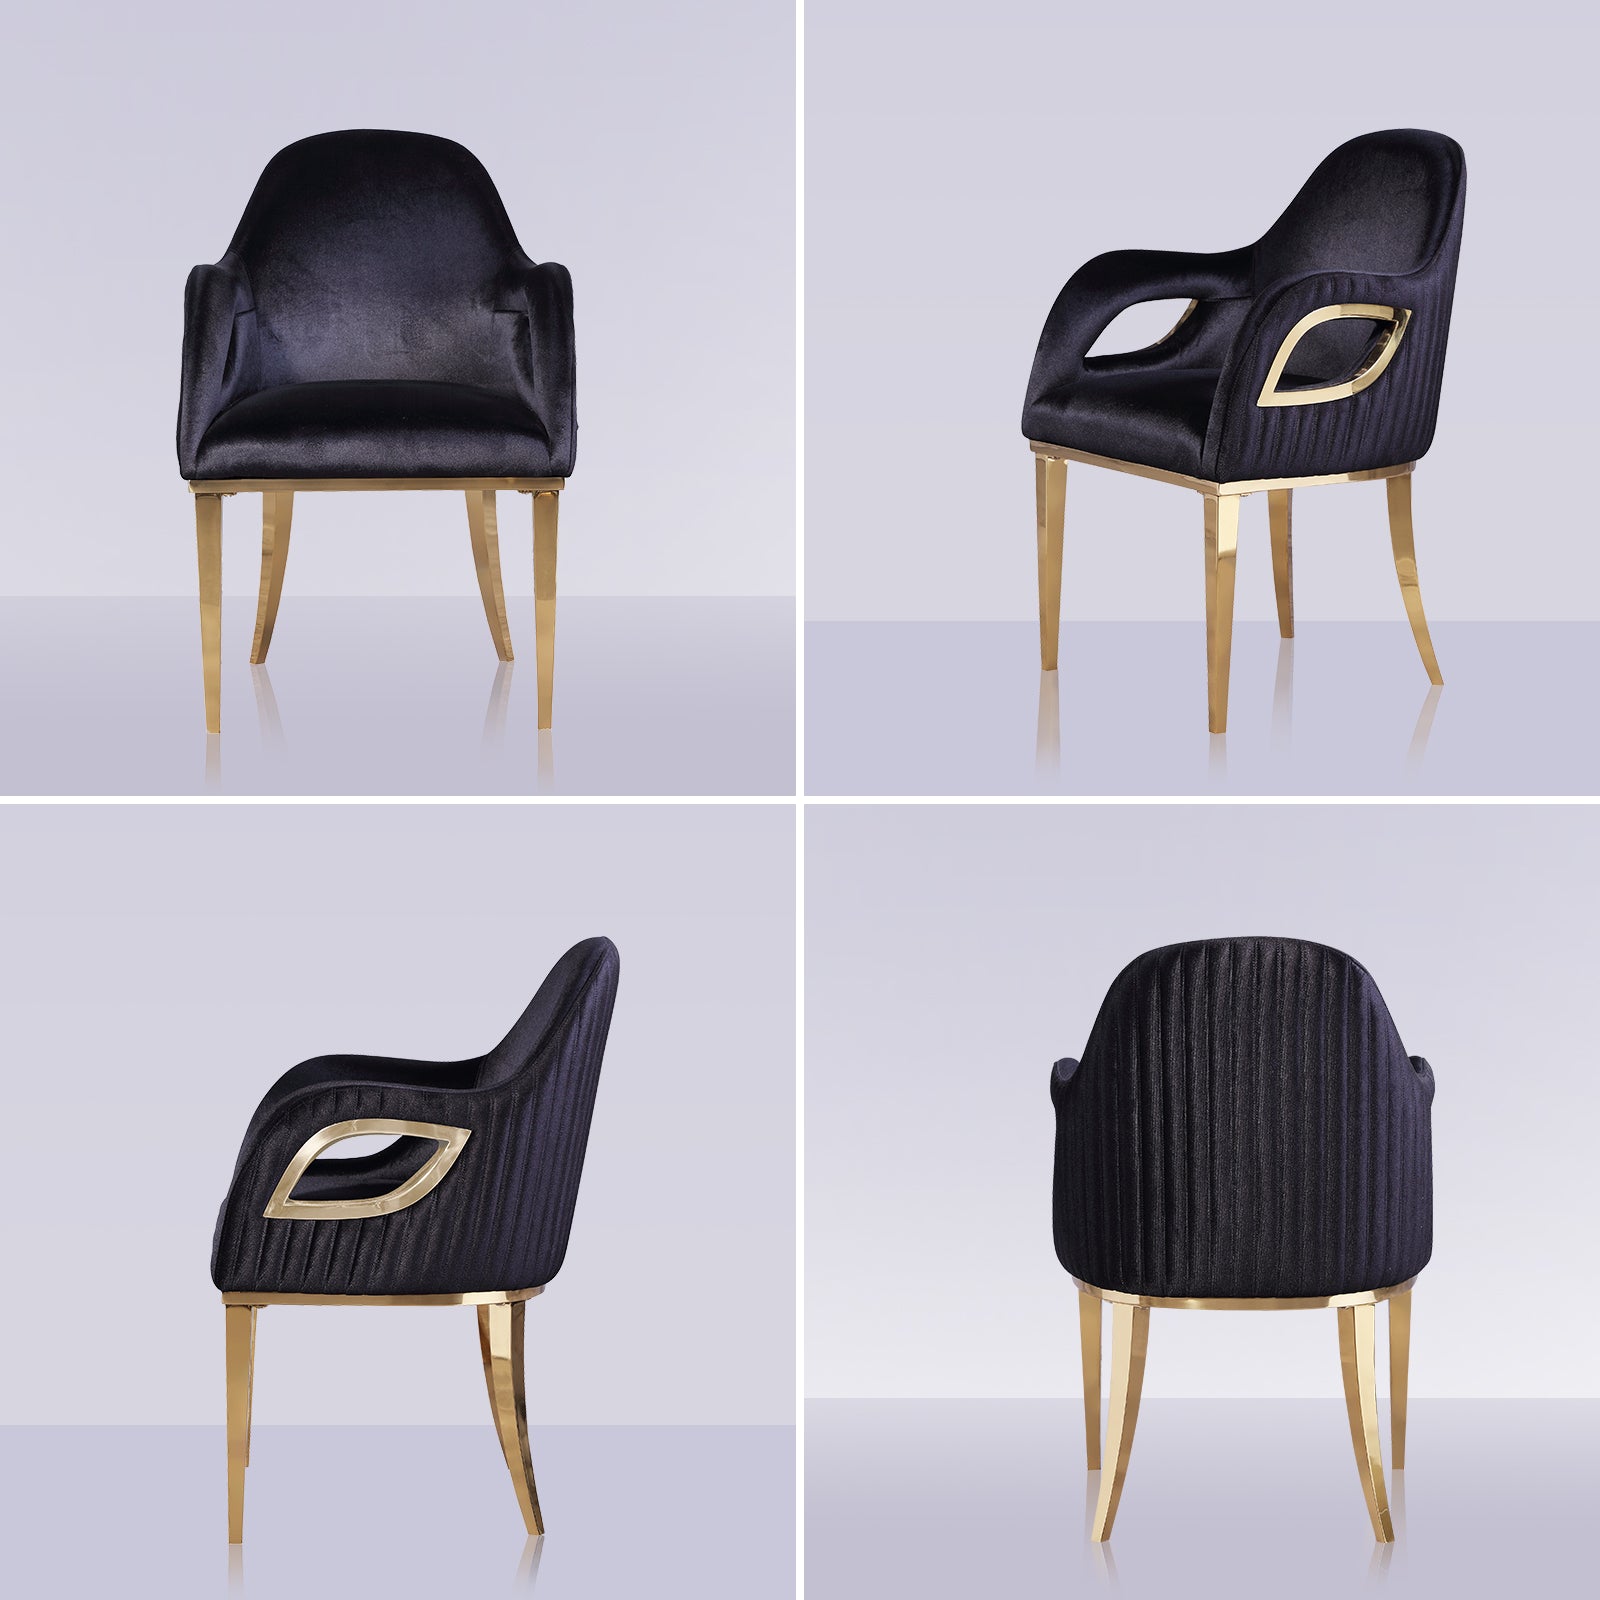 Wholesale Black velvet chairs with Fox-Eye Armrest